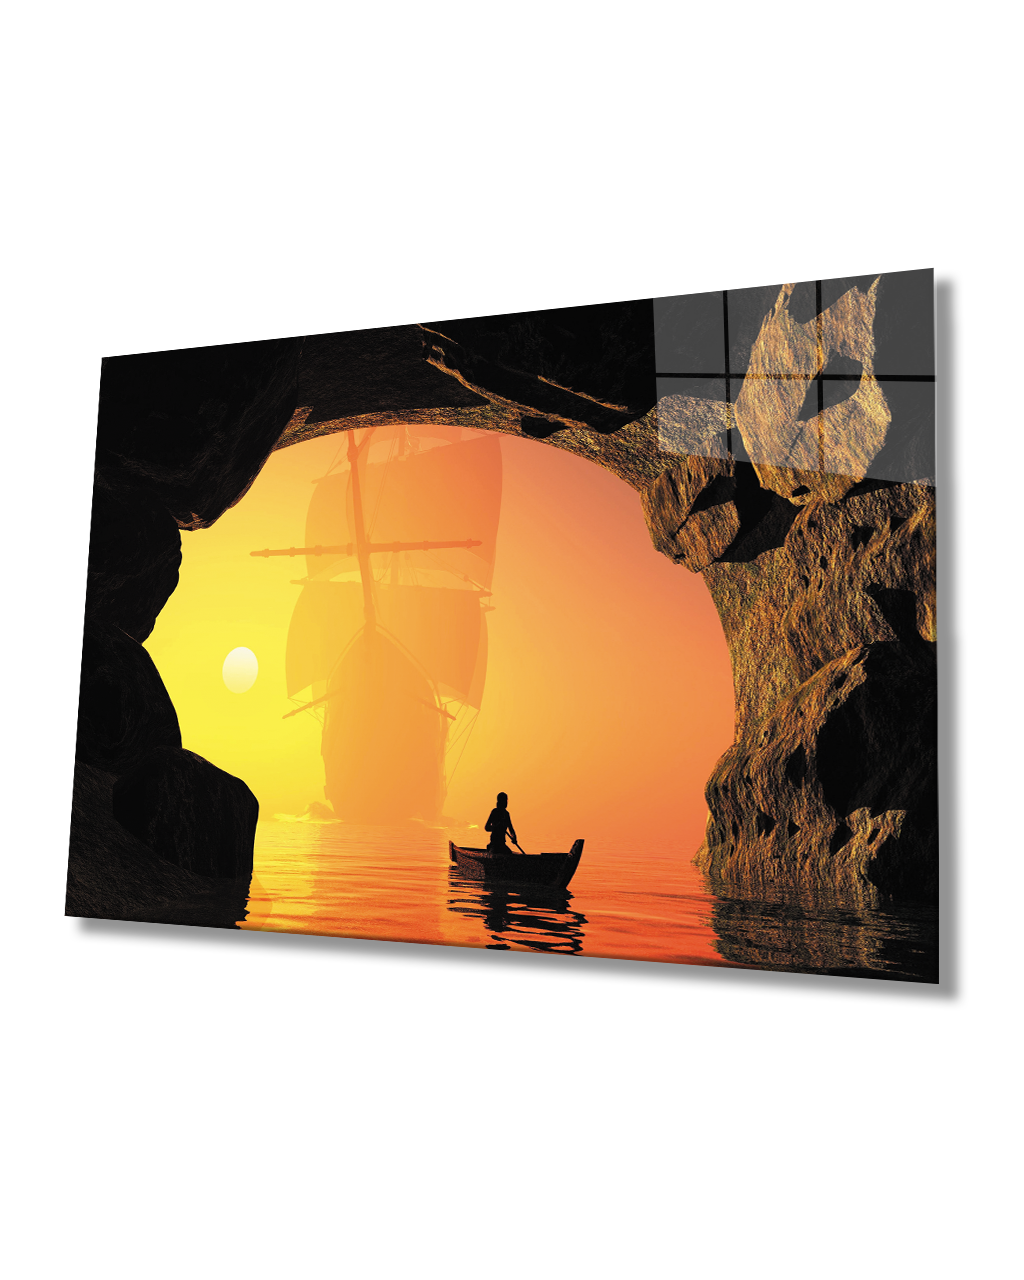 Gün Batımı Kayık Kaya Manzaralı Cam Tablo Sunset Kayak Rock View Glass Table 4mm Durable Tempered Glass  4mm Dayanıklı Temperli Cam